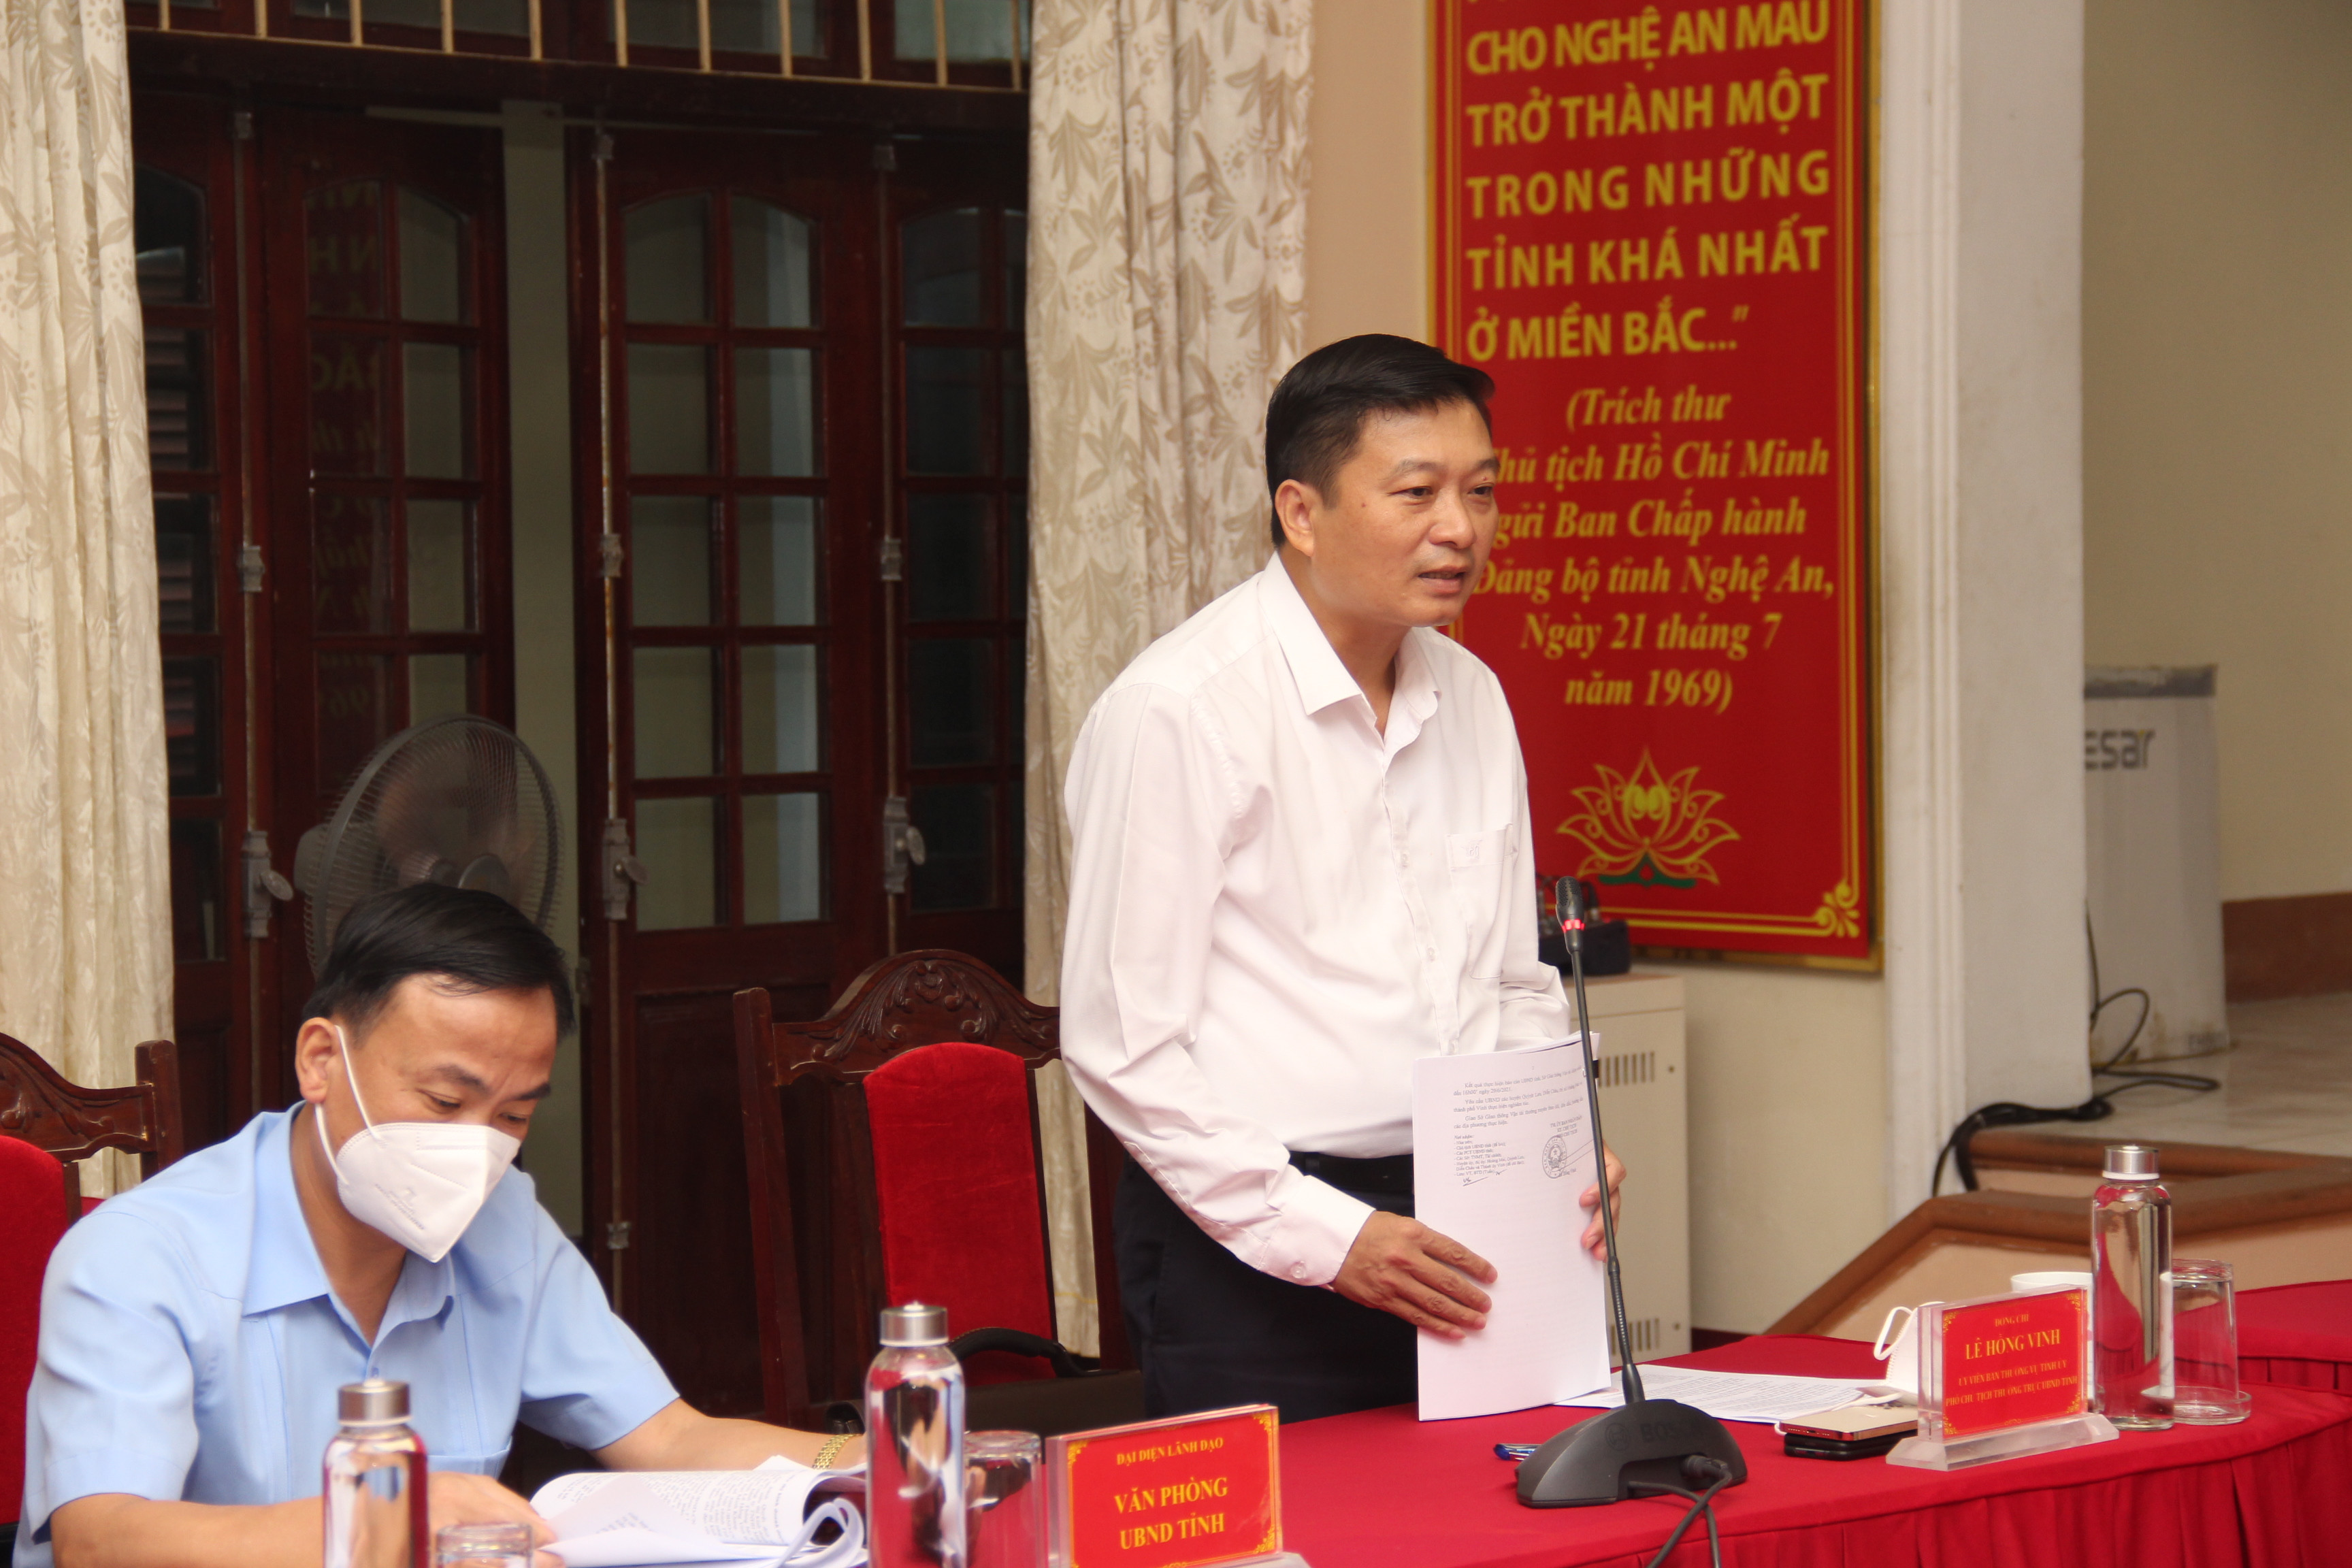 Phó Chủ tịch Thường trực UBND tỉnh Lê Hồng Vinh cho ý kiến về xử lý các vụ án phức tạp, kéo dài được dư luận quan tâm. Ảnh: Hoài Thu